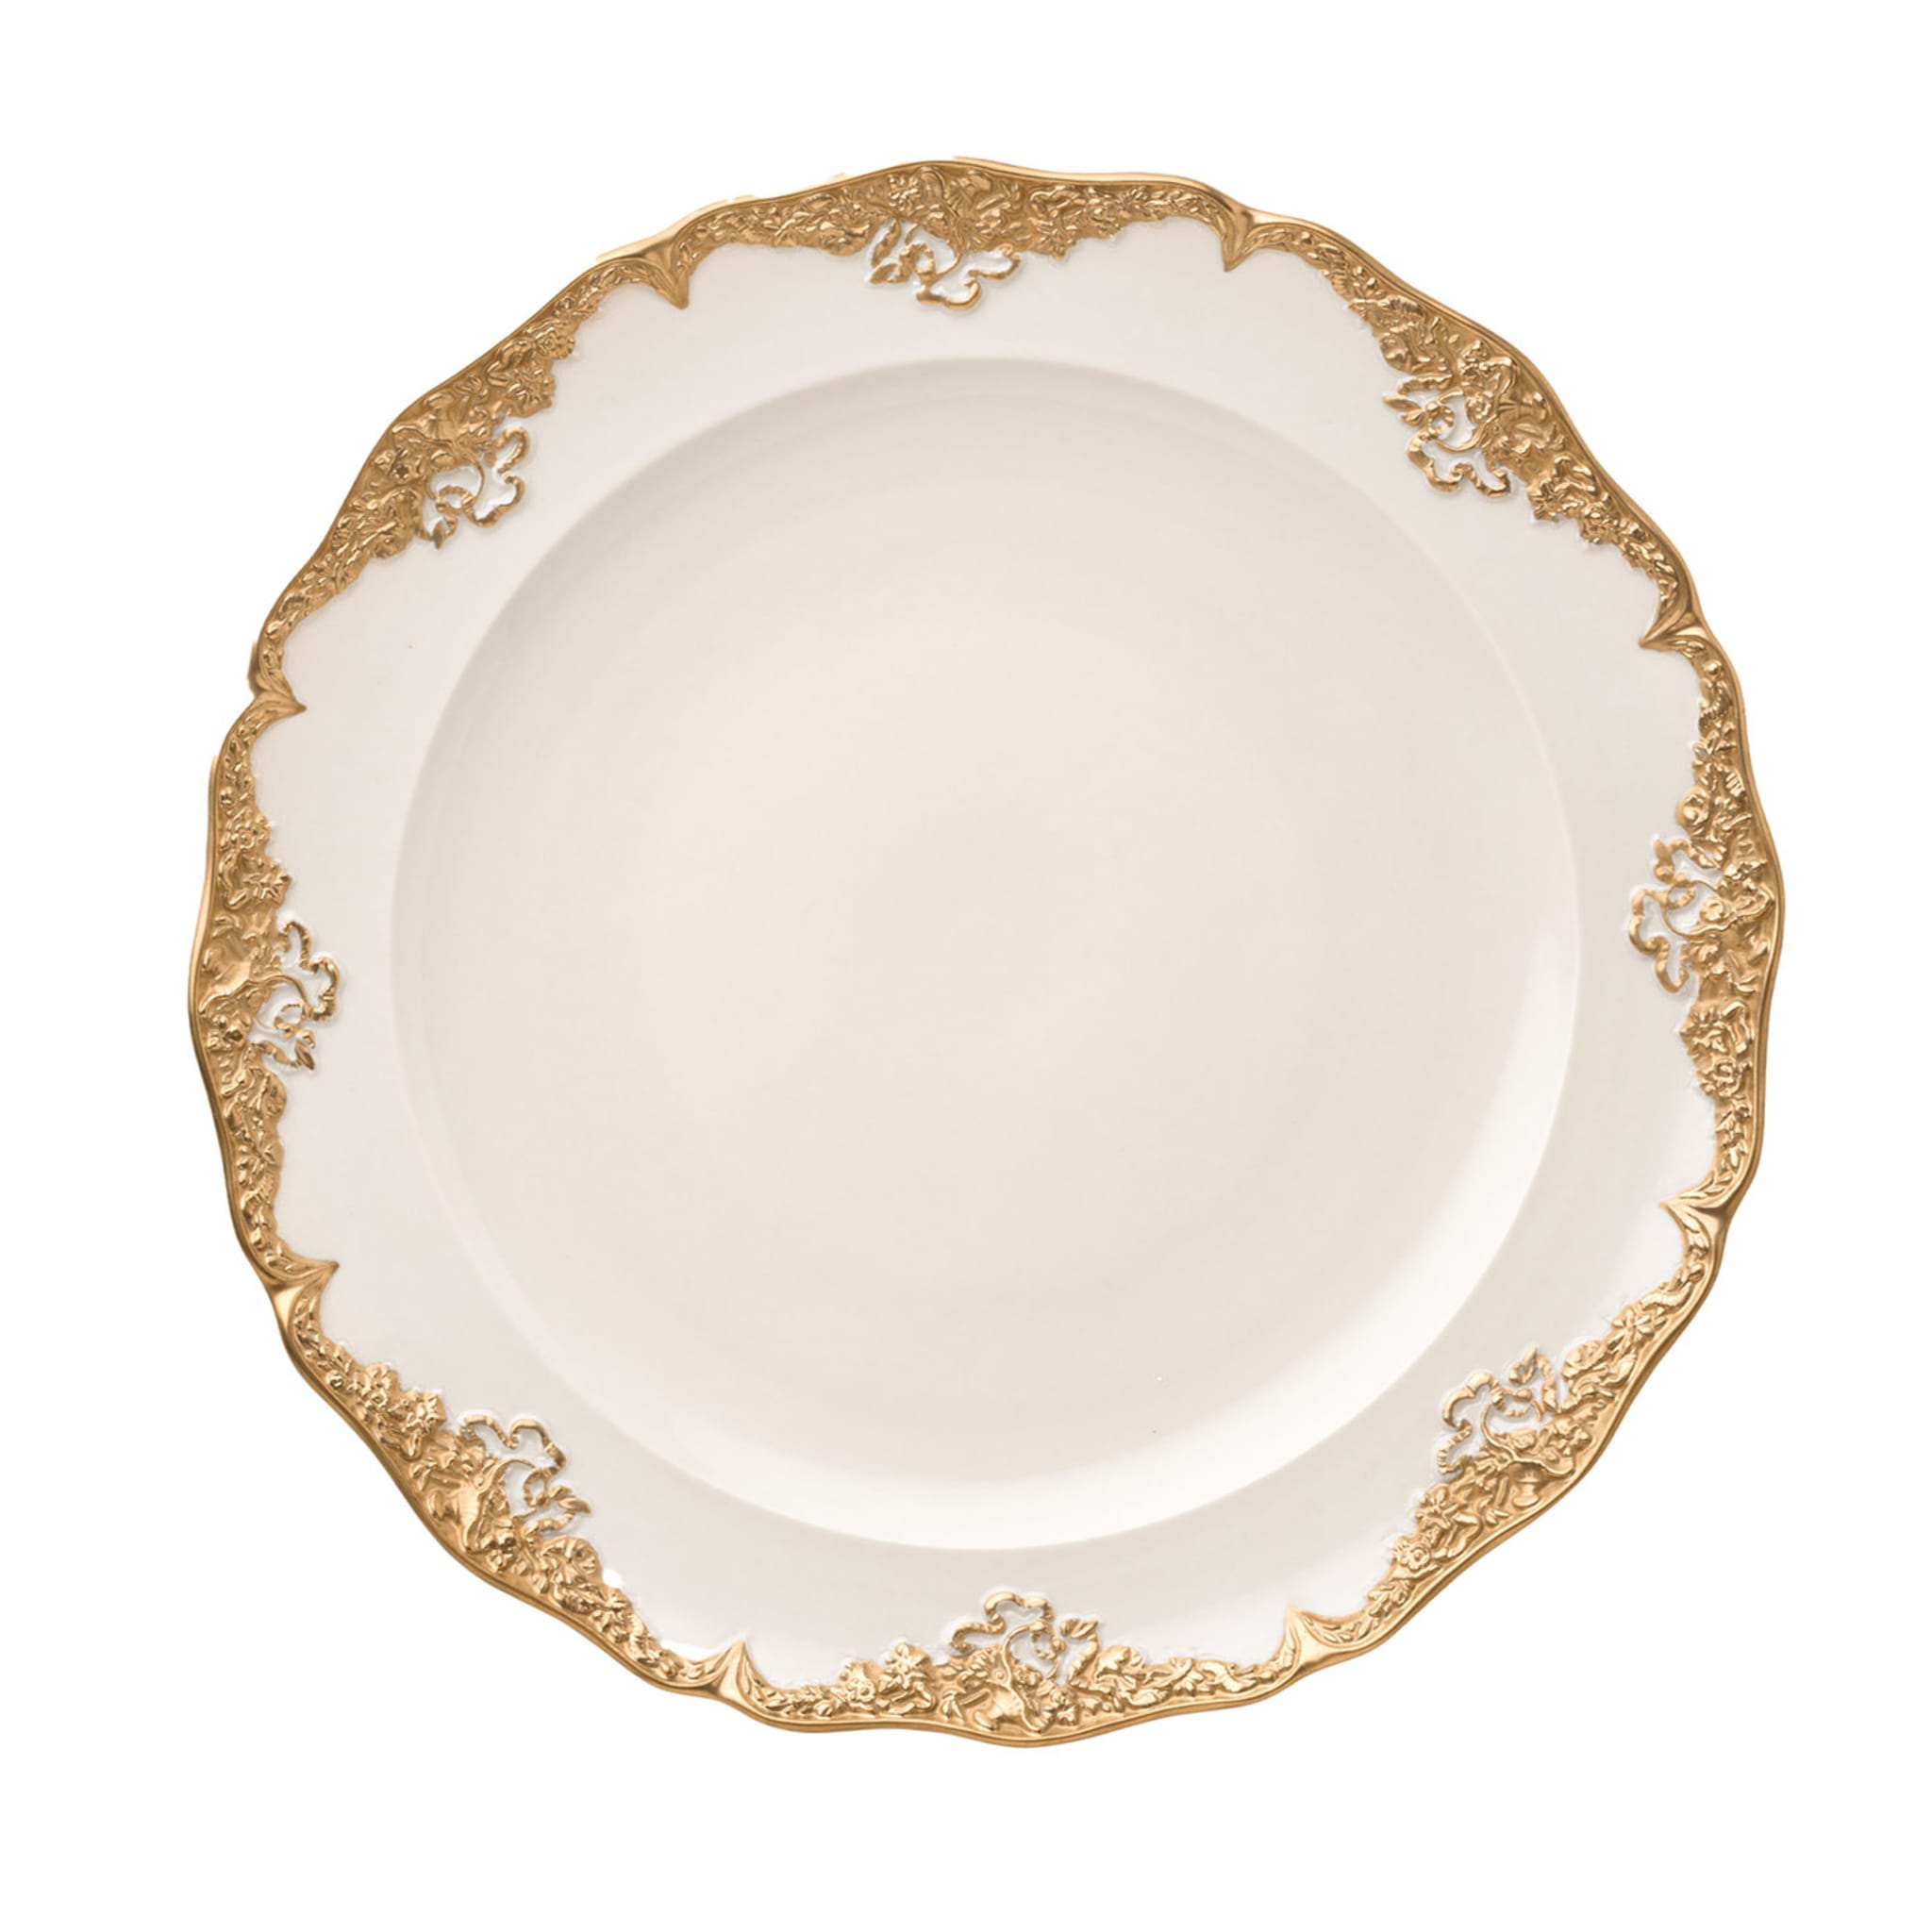 Irene Set of 2 White & Gold Dinner Plates - Main view